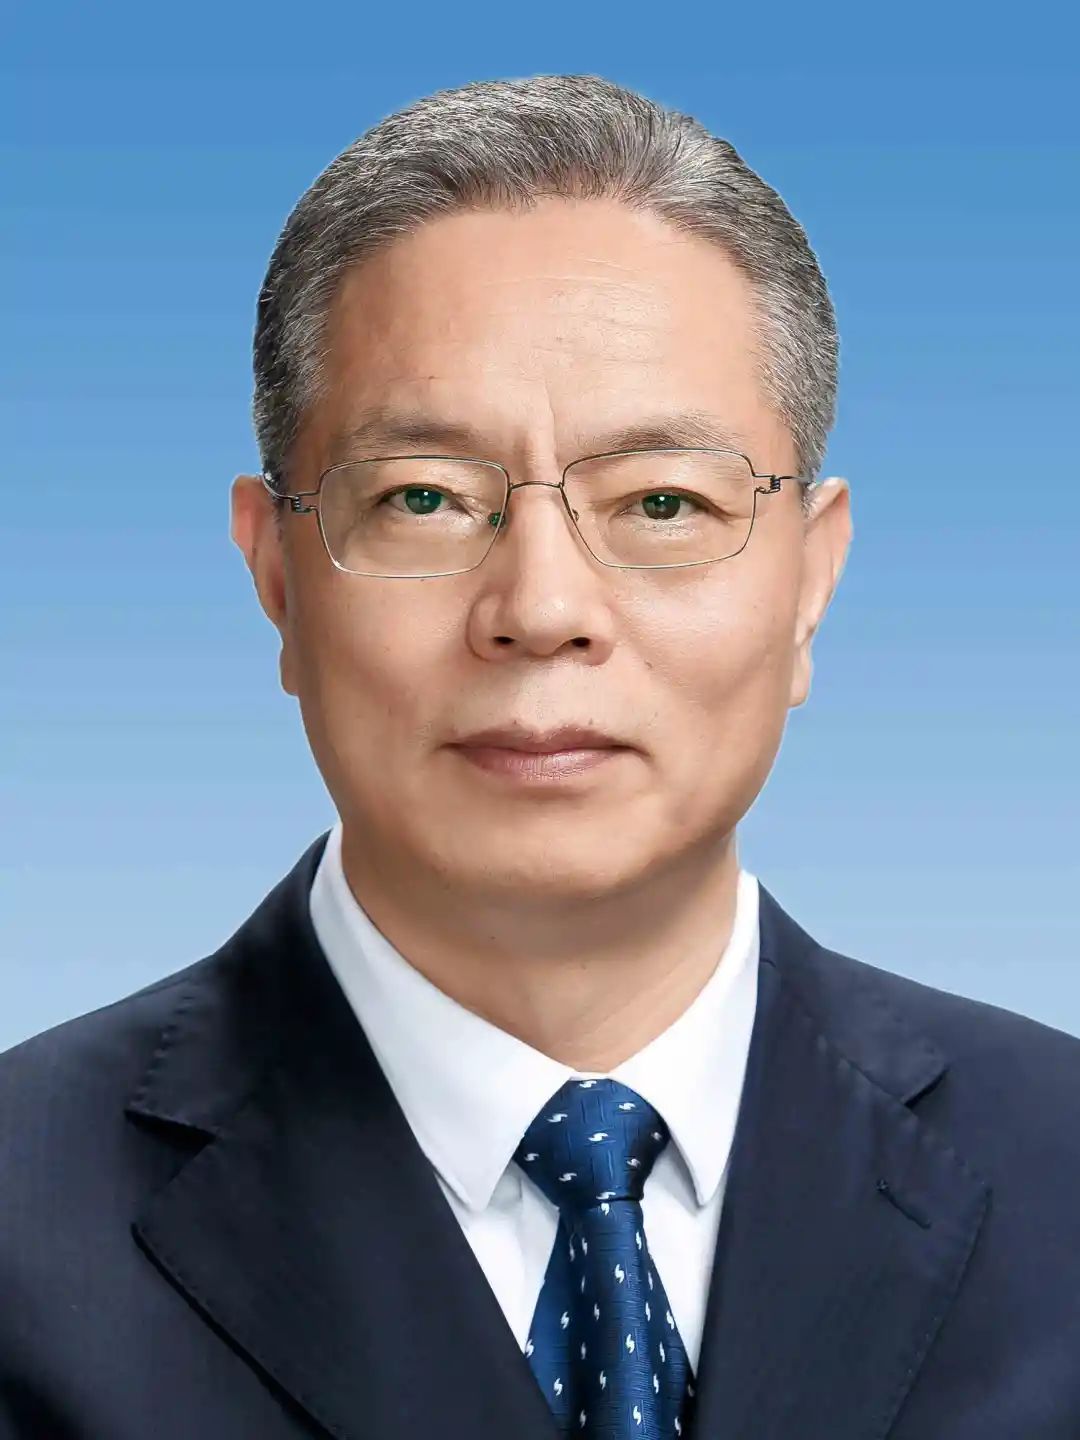 刘宁当选广西壮族自治区党委书记蓝天立刘小明当选副书记